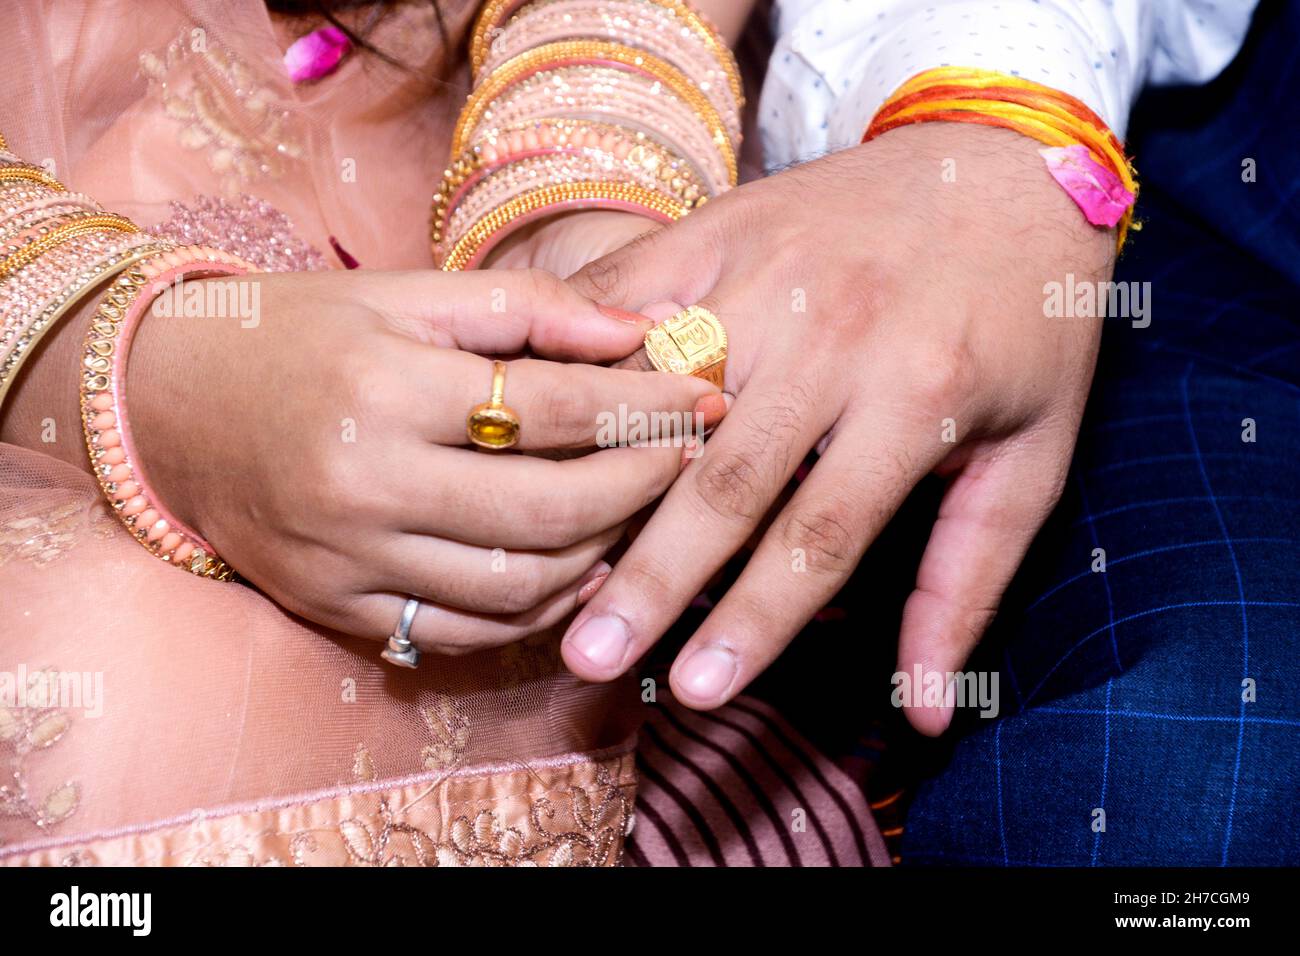 ringceremony #wedding #engagement #indianwedding #ring #indianbride  #weddingphotography #rings #bride #love #shaadi #engagementring #pho... |  Instagram